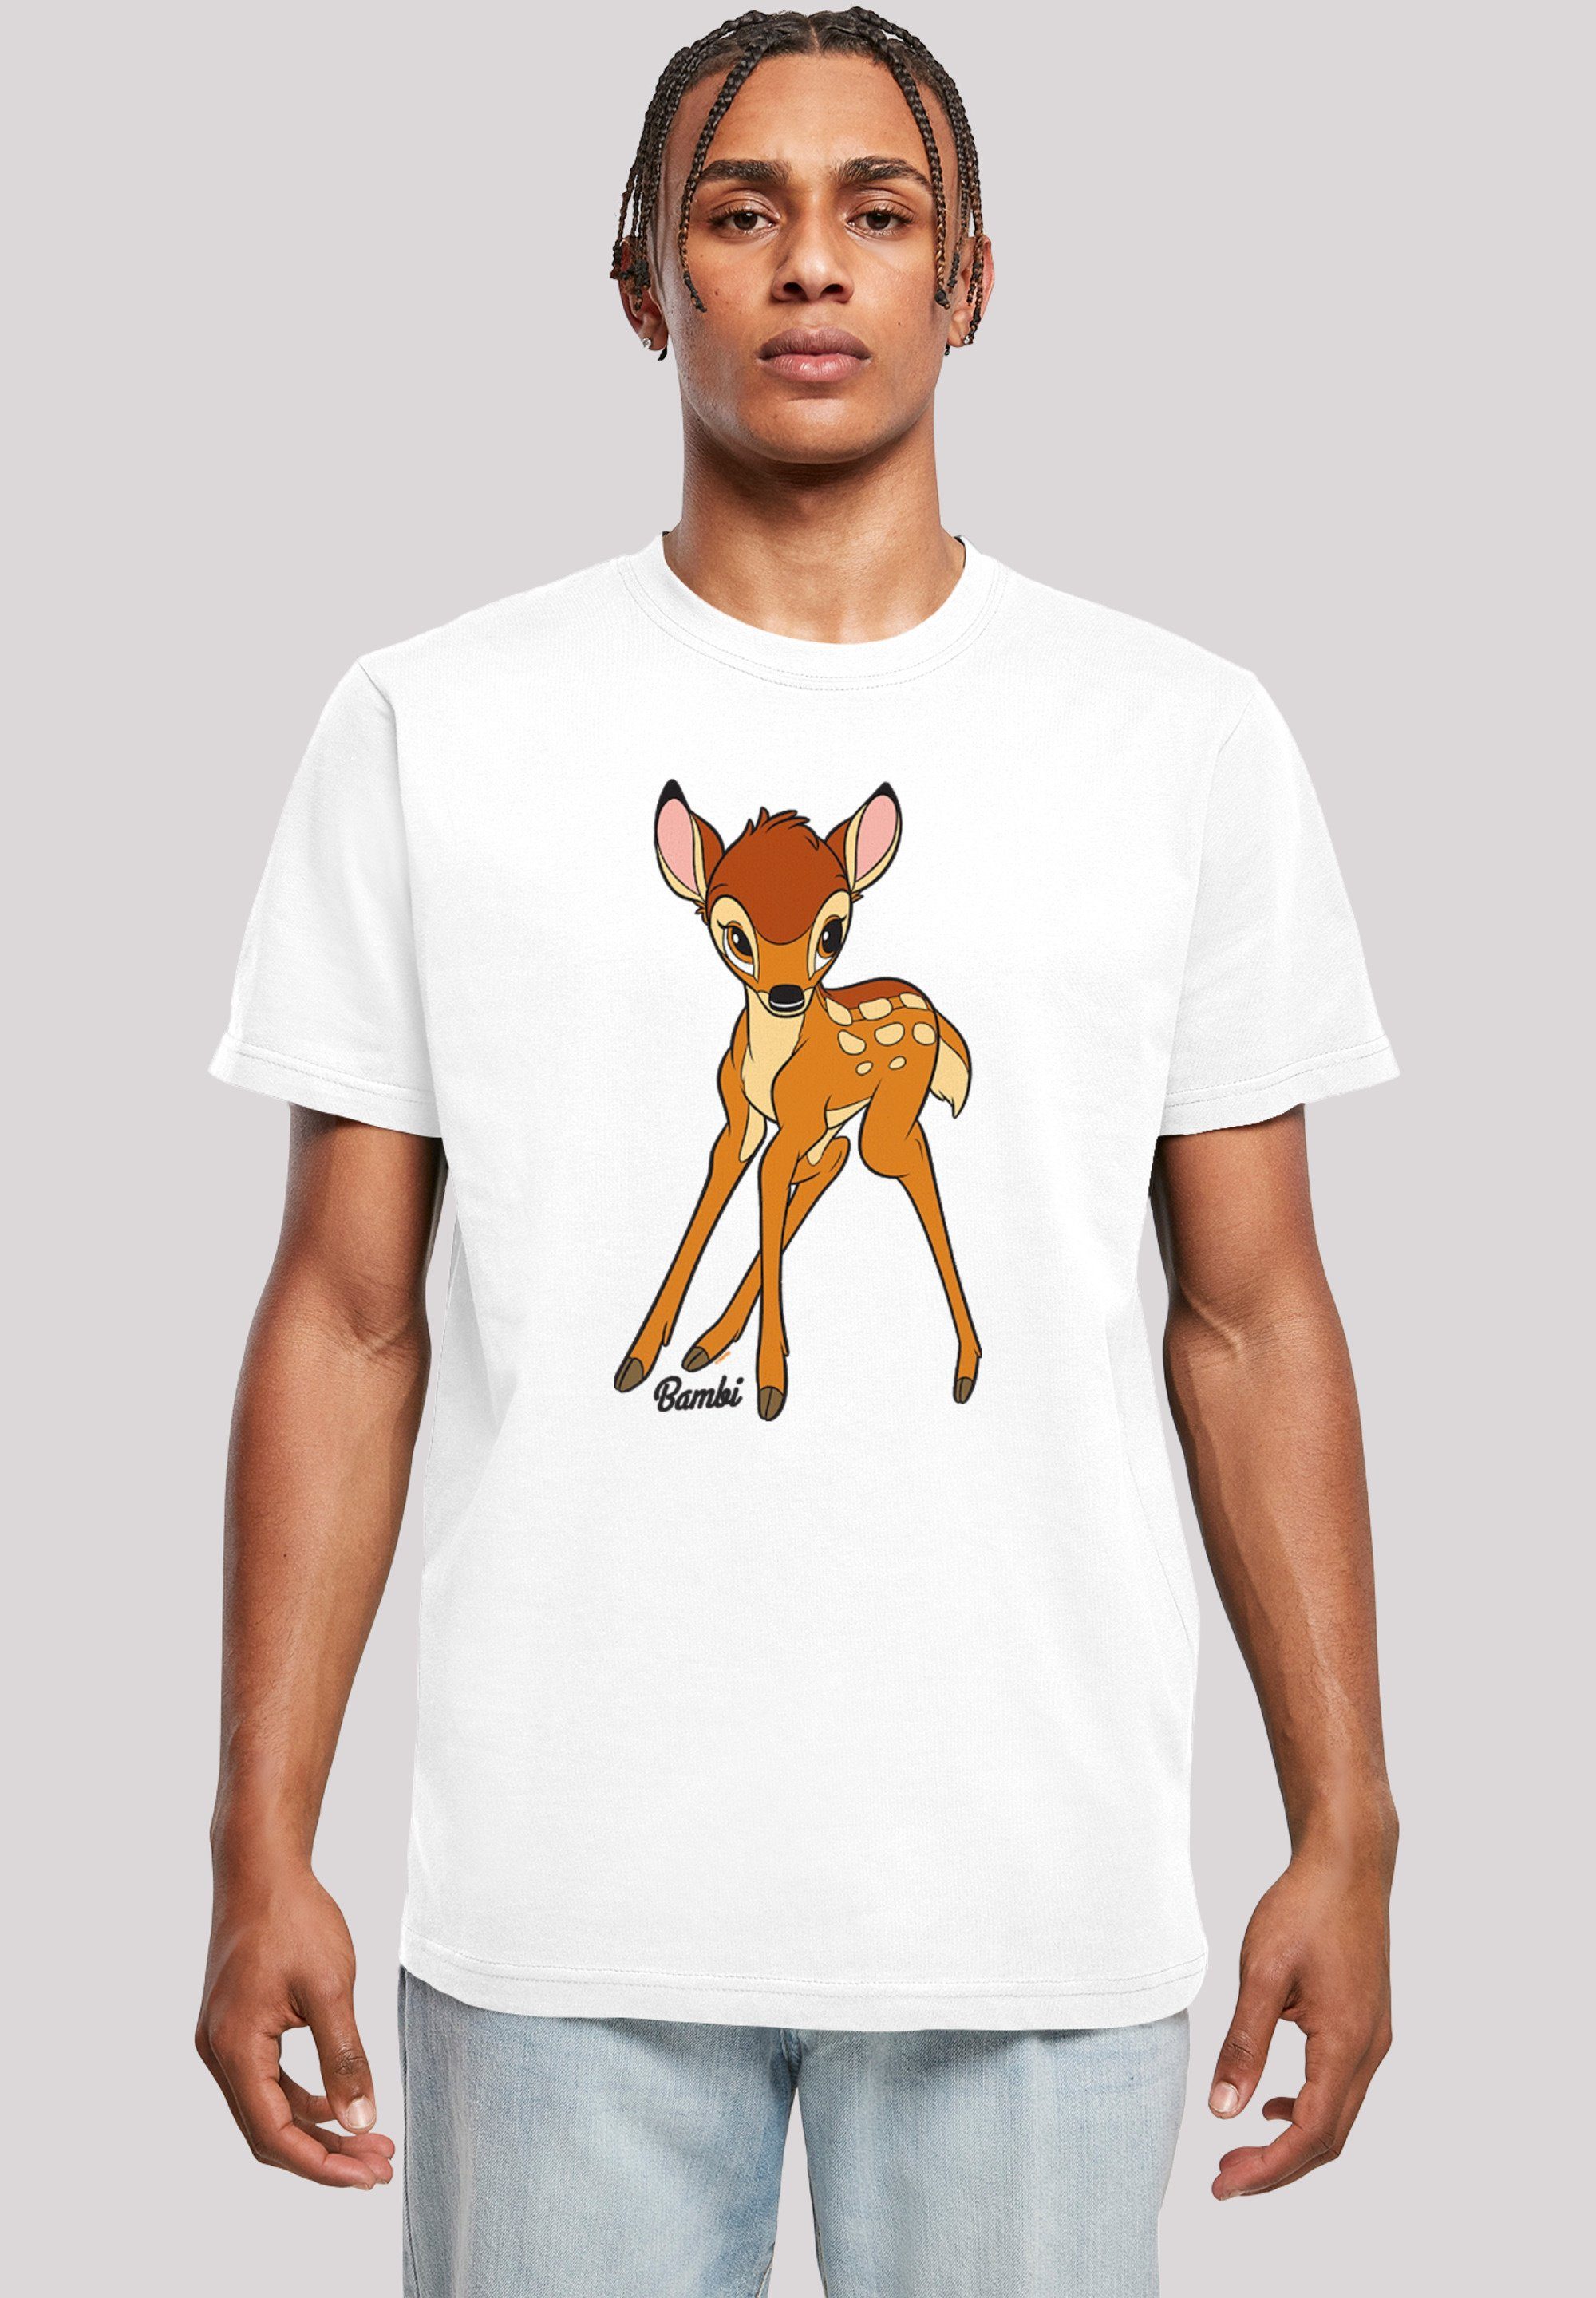 T-Shirt Herren,Premium Disney Bambi weiß Classic F4NT4STIC Merch,Regular-Fit,Basic,Bedruckt